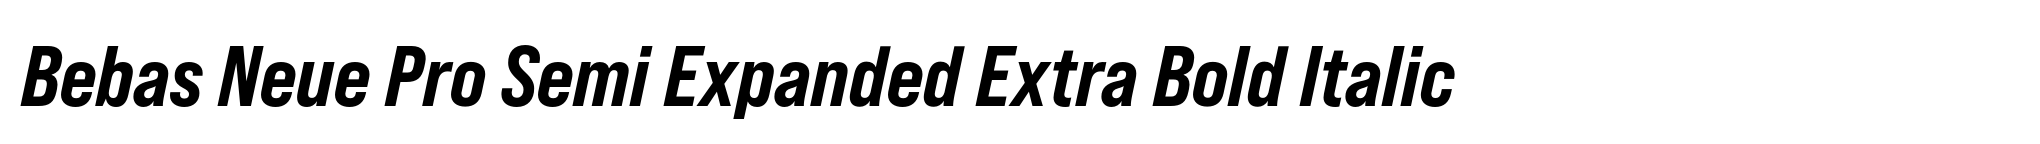 Bebas Neue Pro Semi Expanded Extra Bold Italic image